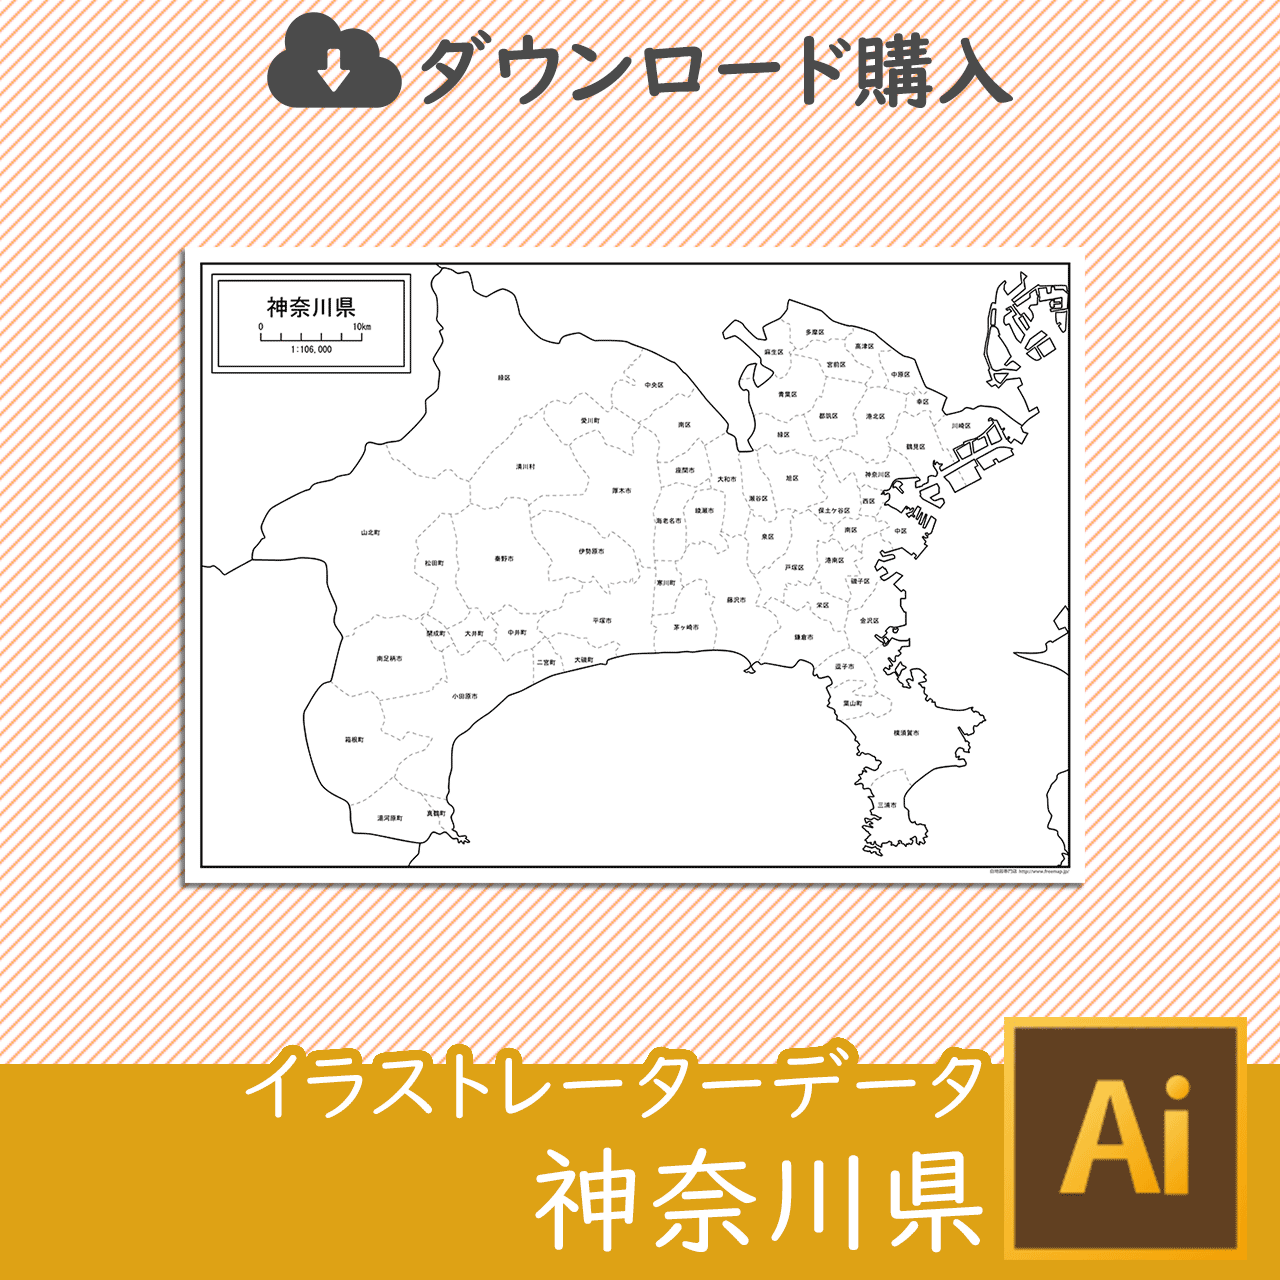 神奈川県の白地図データのサムネイル画像